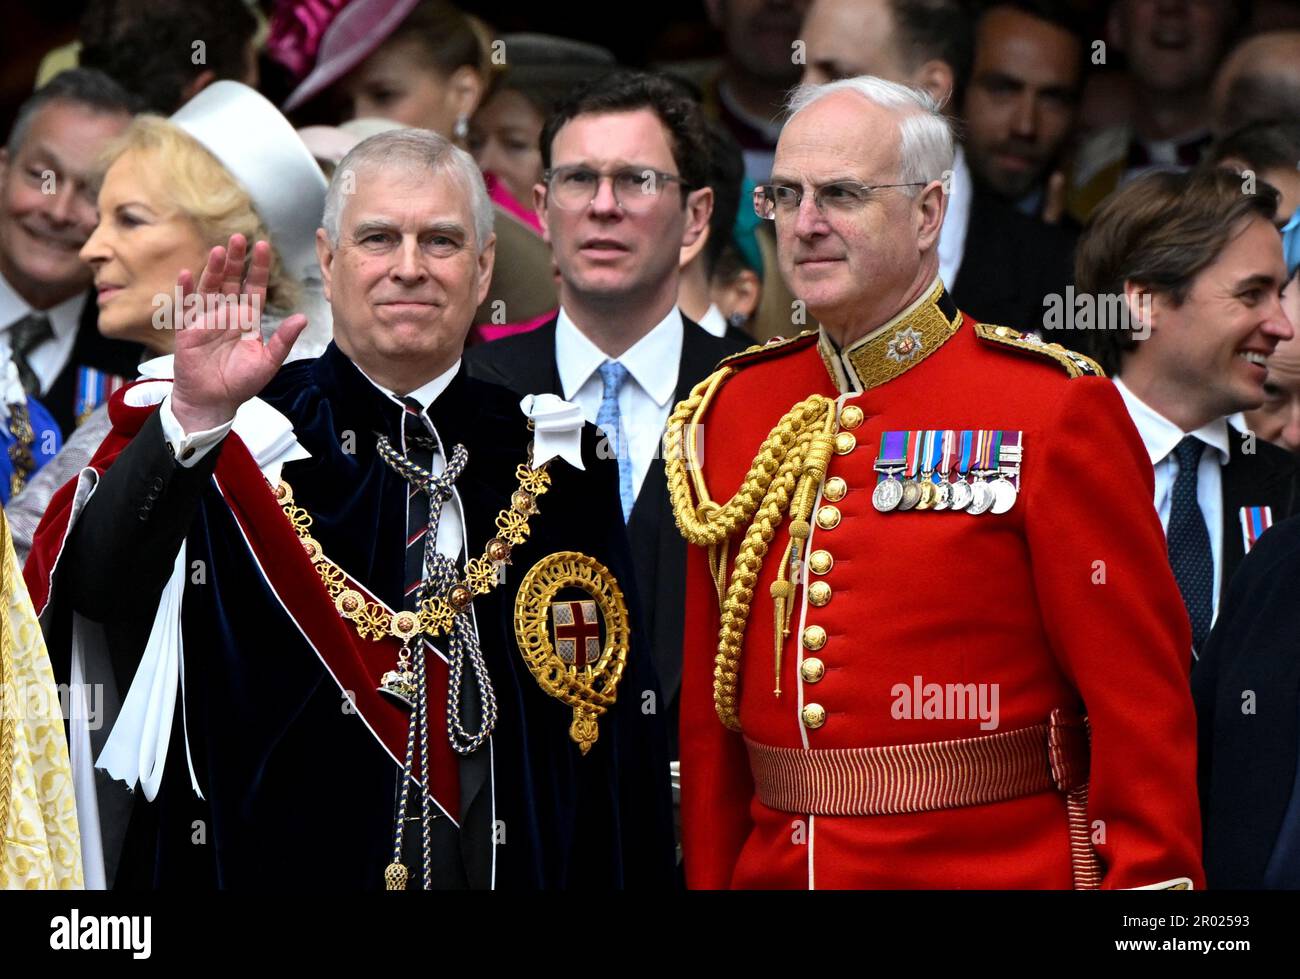 Der Duke of York (links) verlässt Westminster Abbey, London, nach der Krönung von König Karl III. Und Königin Camilla. Foto: Samstag, 6. Mai 2023. Stockfoto